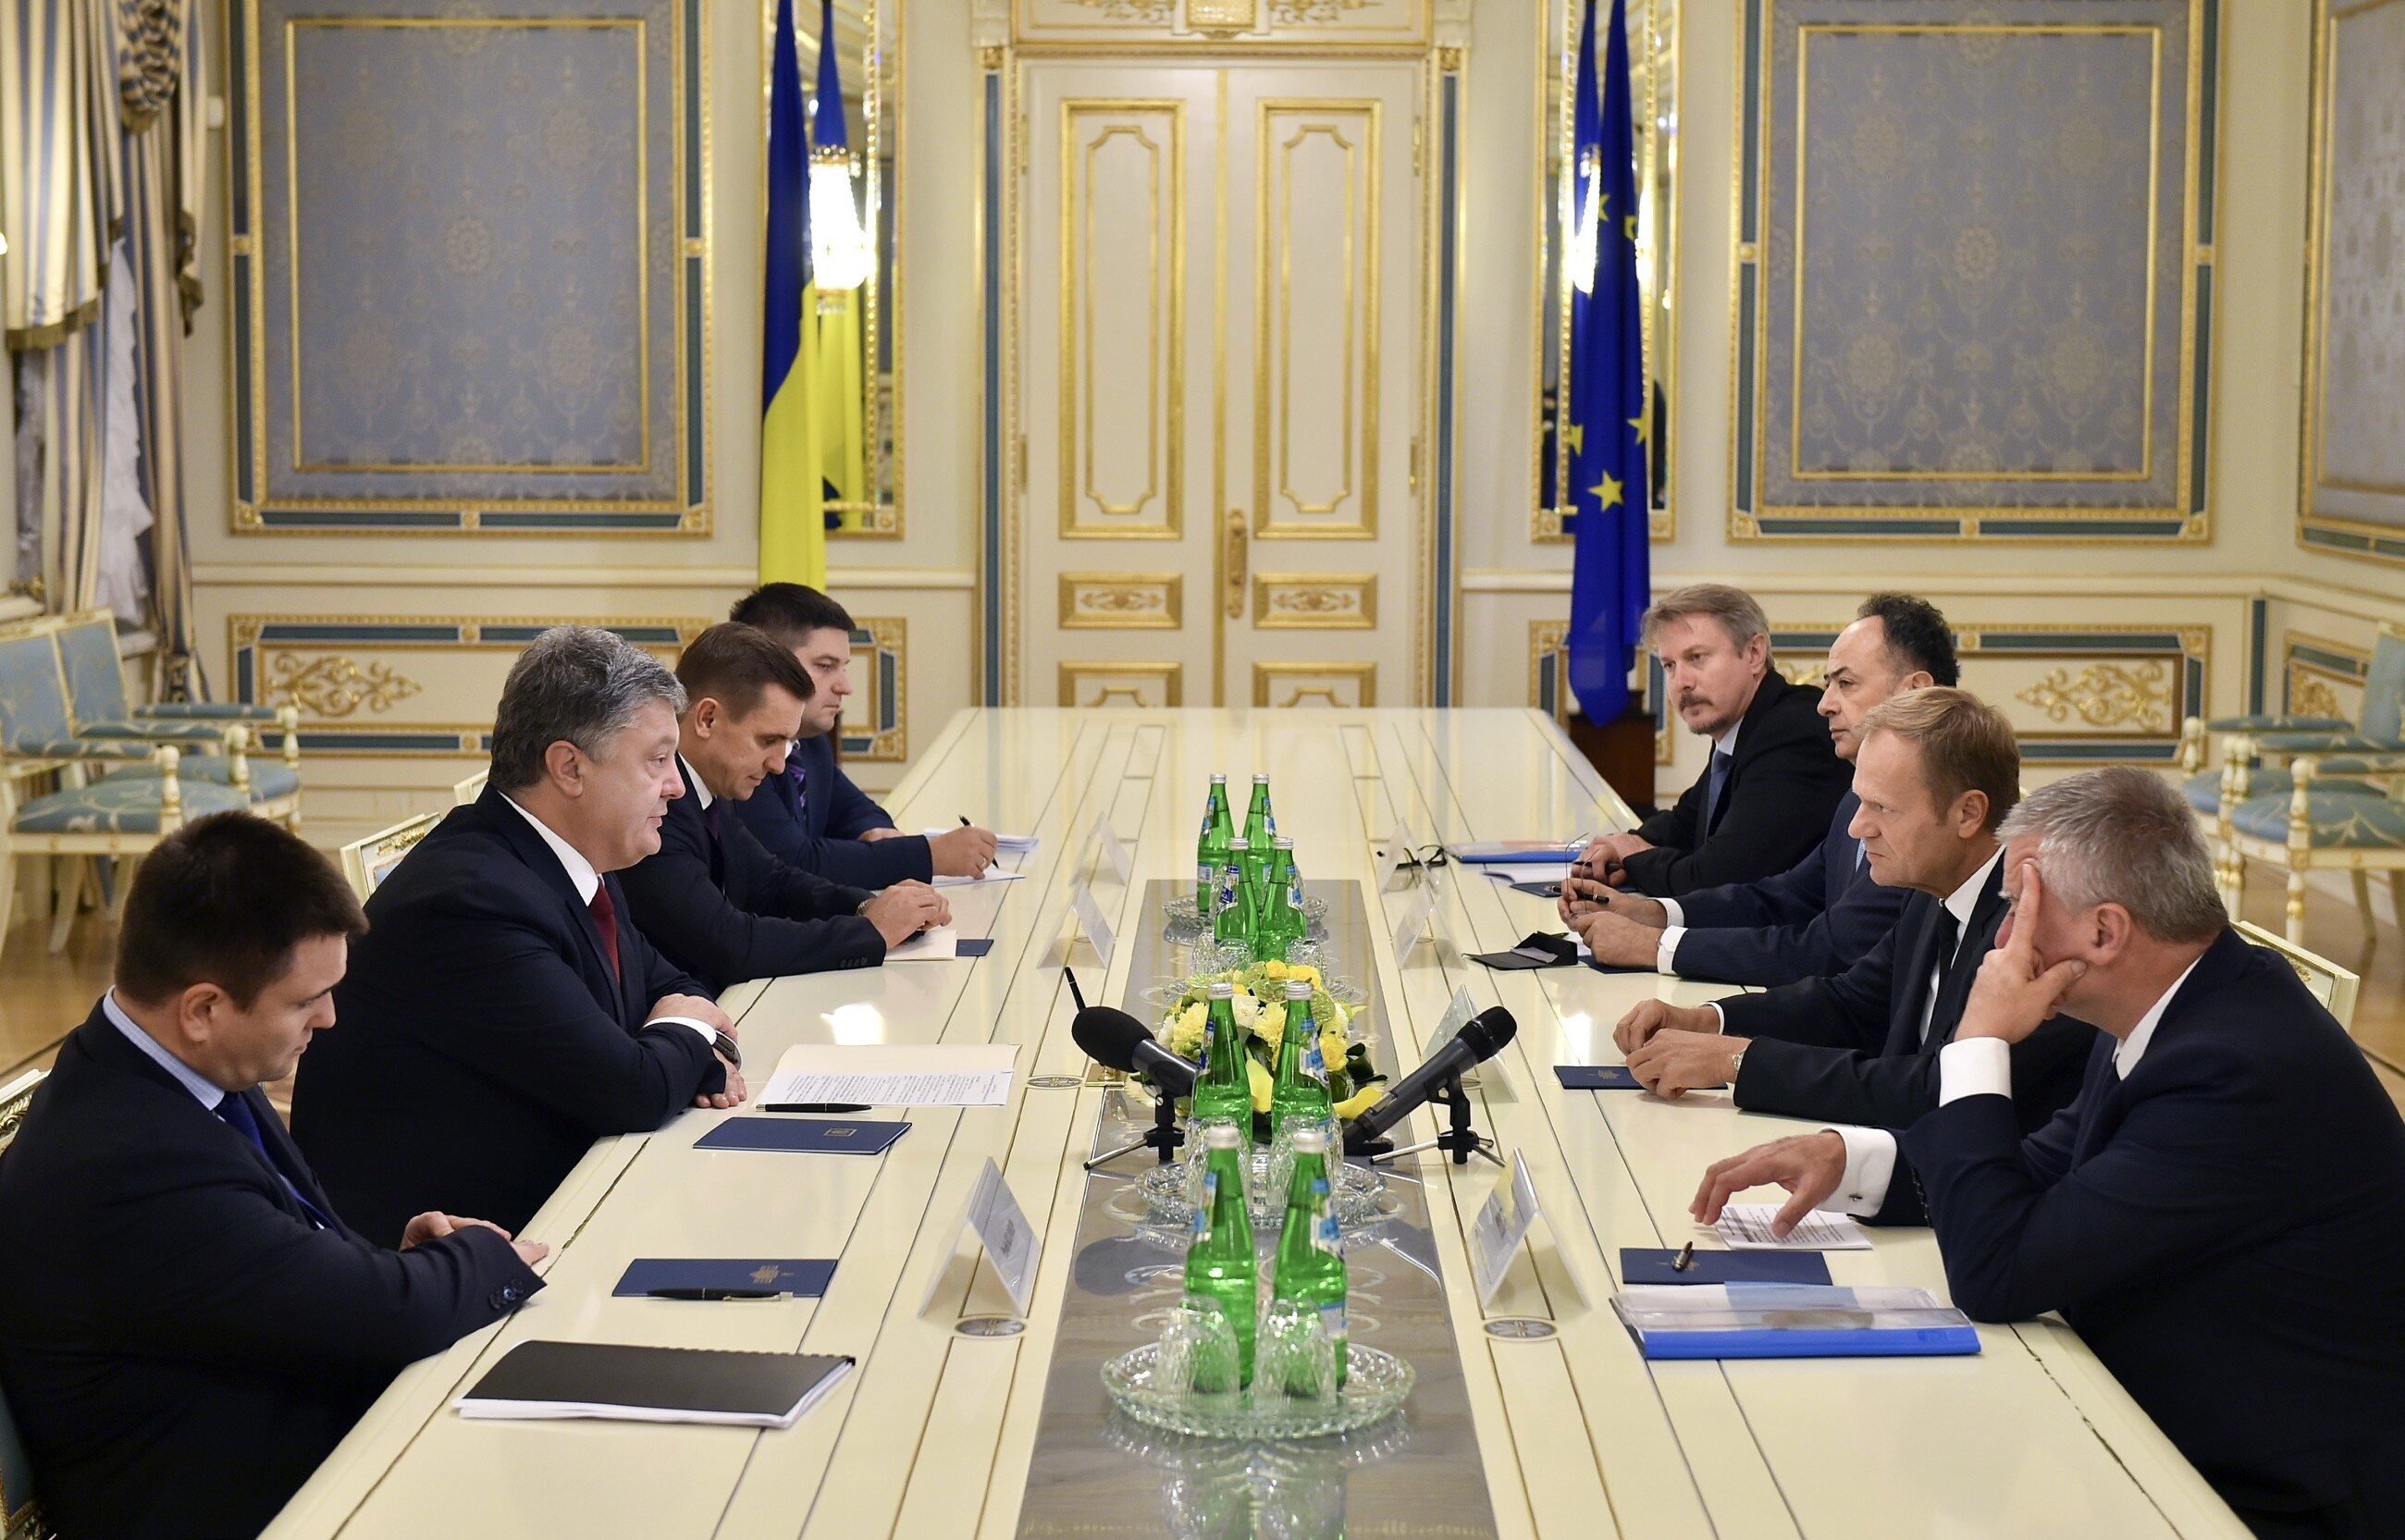 Spotkanie prezydenta Ukrainy Petro Poroszenki i przewodniczącego Rady Europejskiej Donalda Tuska